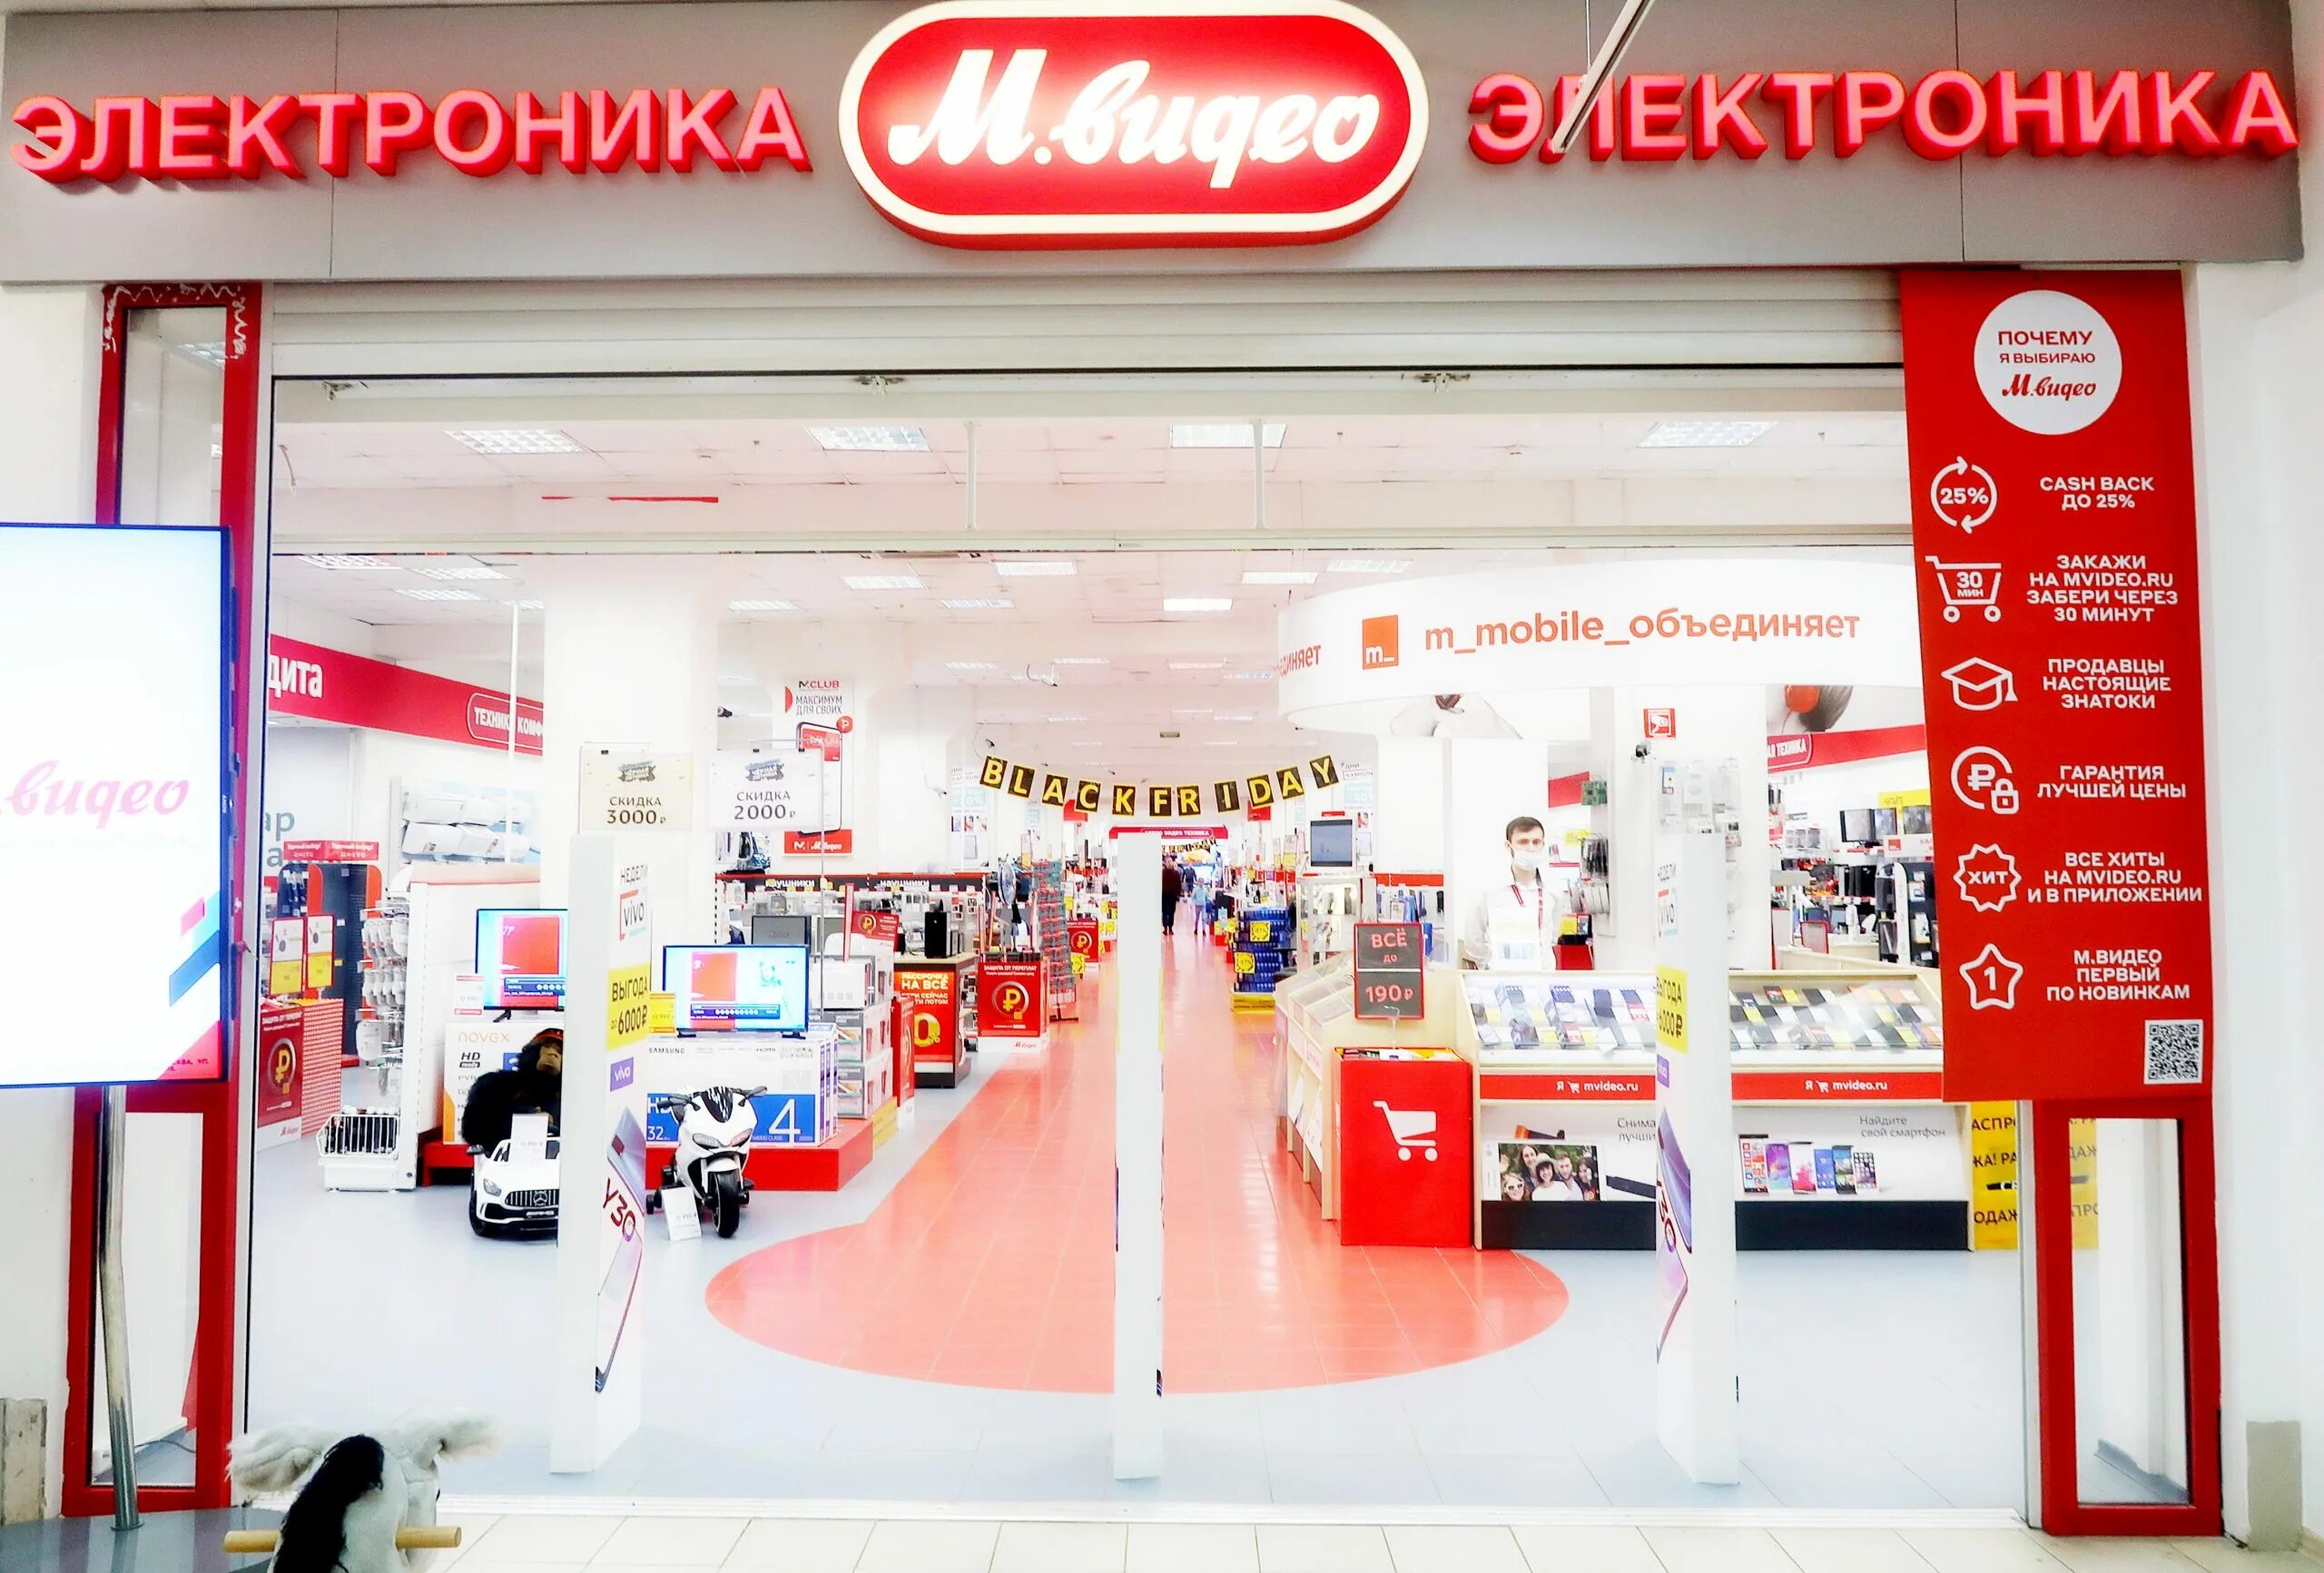 Купить в м видео в туле. М видео. М видео магазин. Мвидео.ru интернет магазин. Мвидео в Нижнем Новгороде.